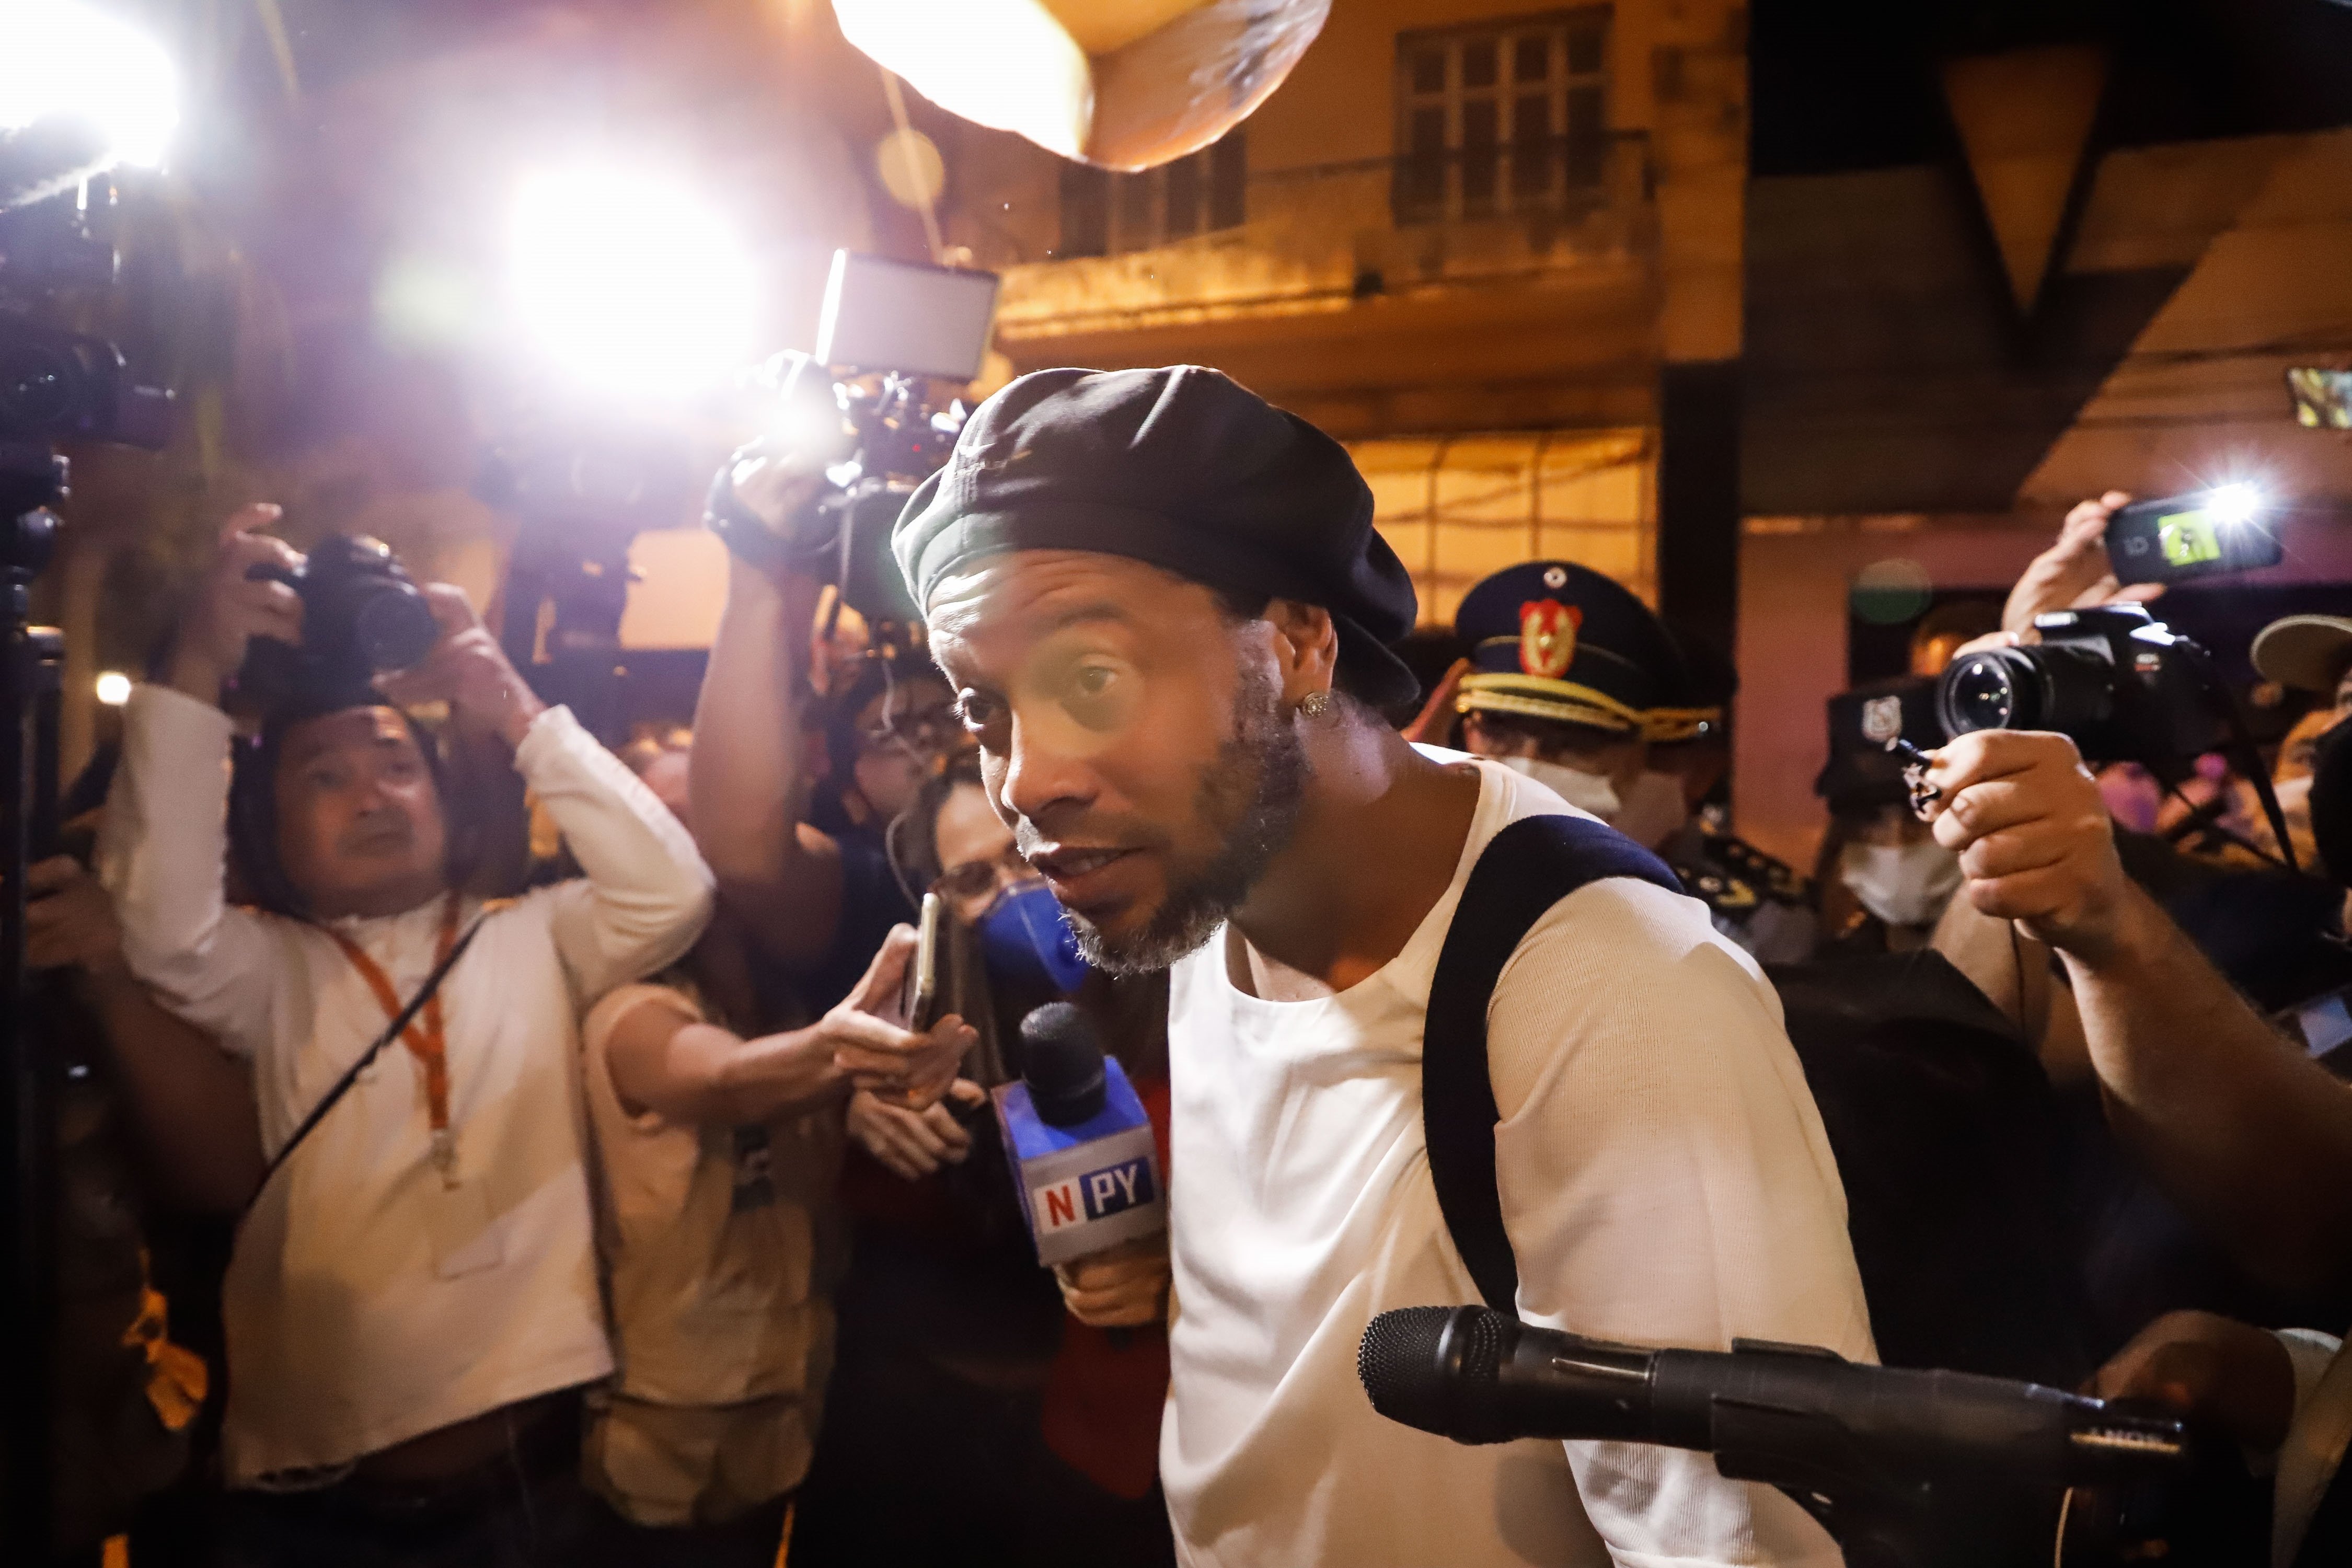 Ronaldinho, en su peor momento tras salir de prisión: "Fue un golpe duro"